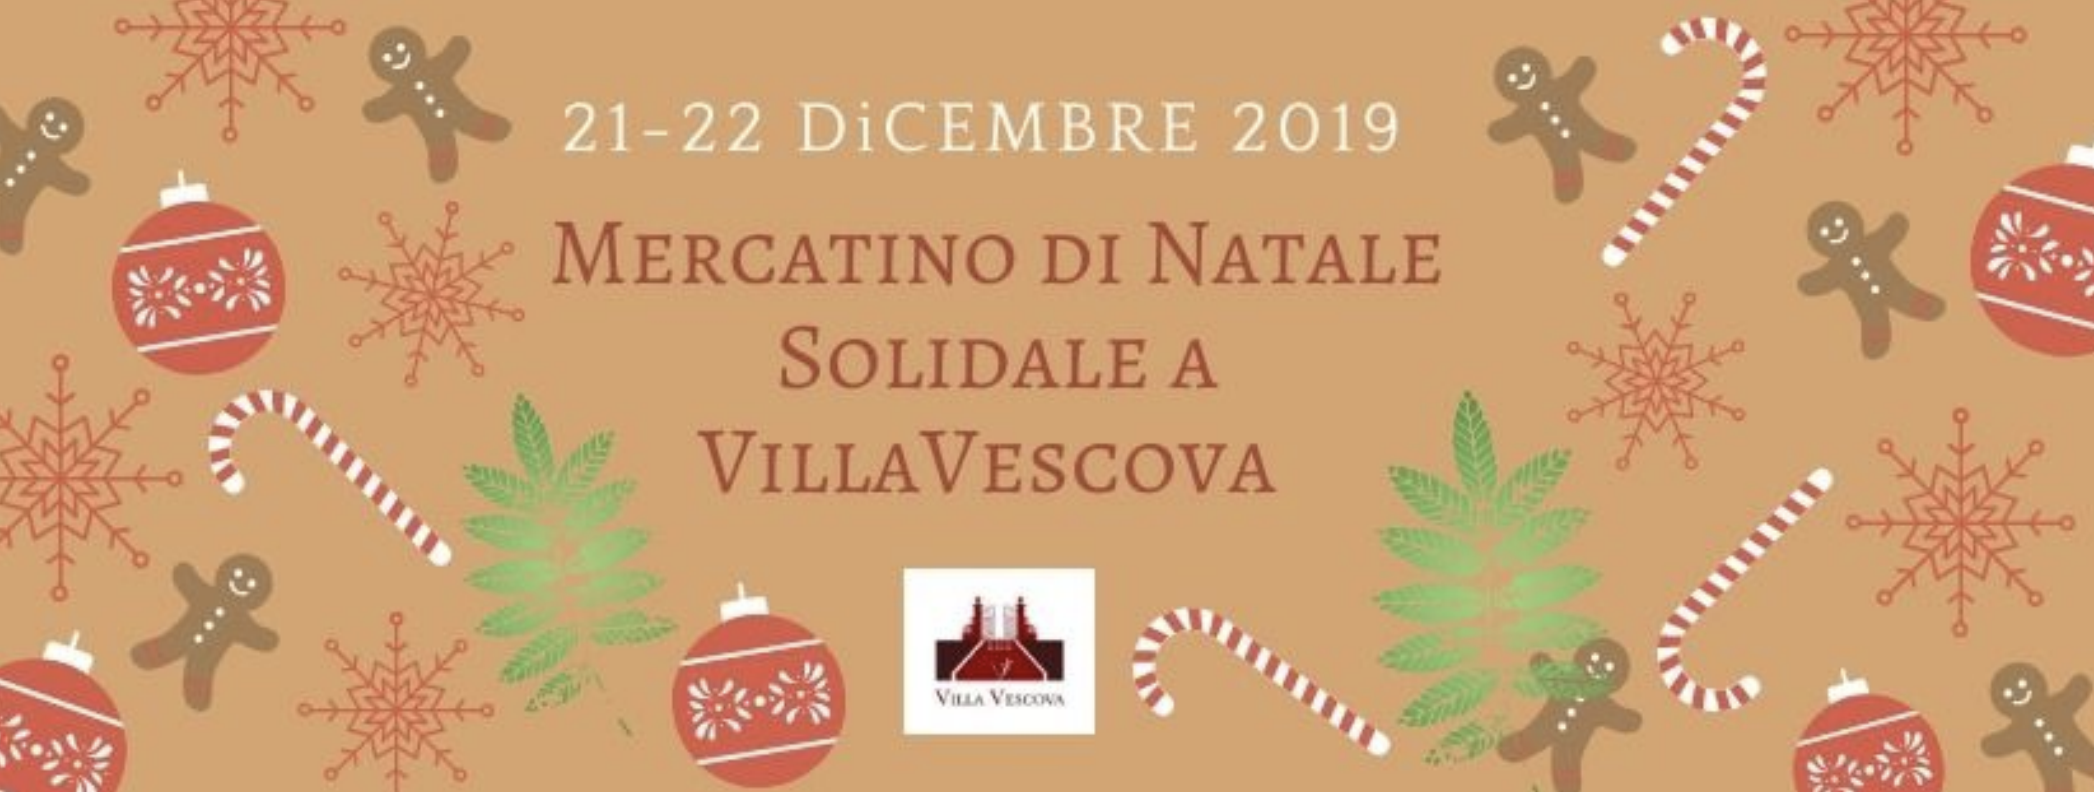 Mercatino di Natale solidale a Villa Vescova